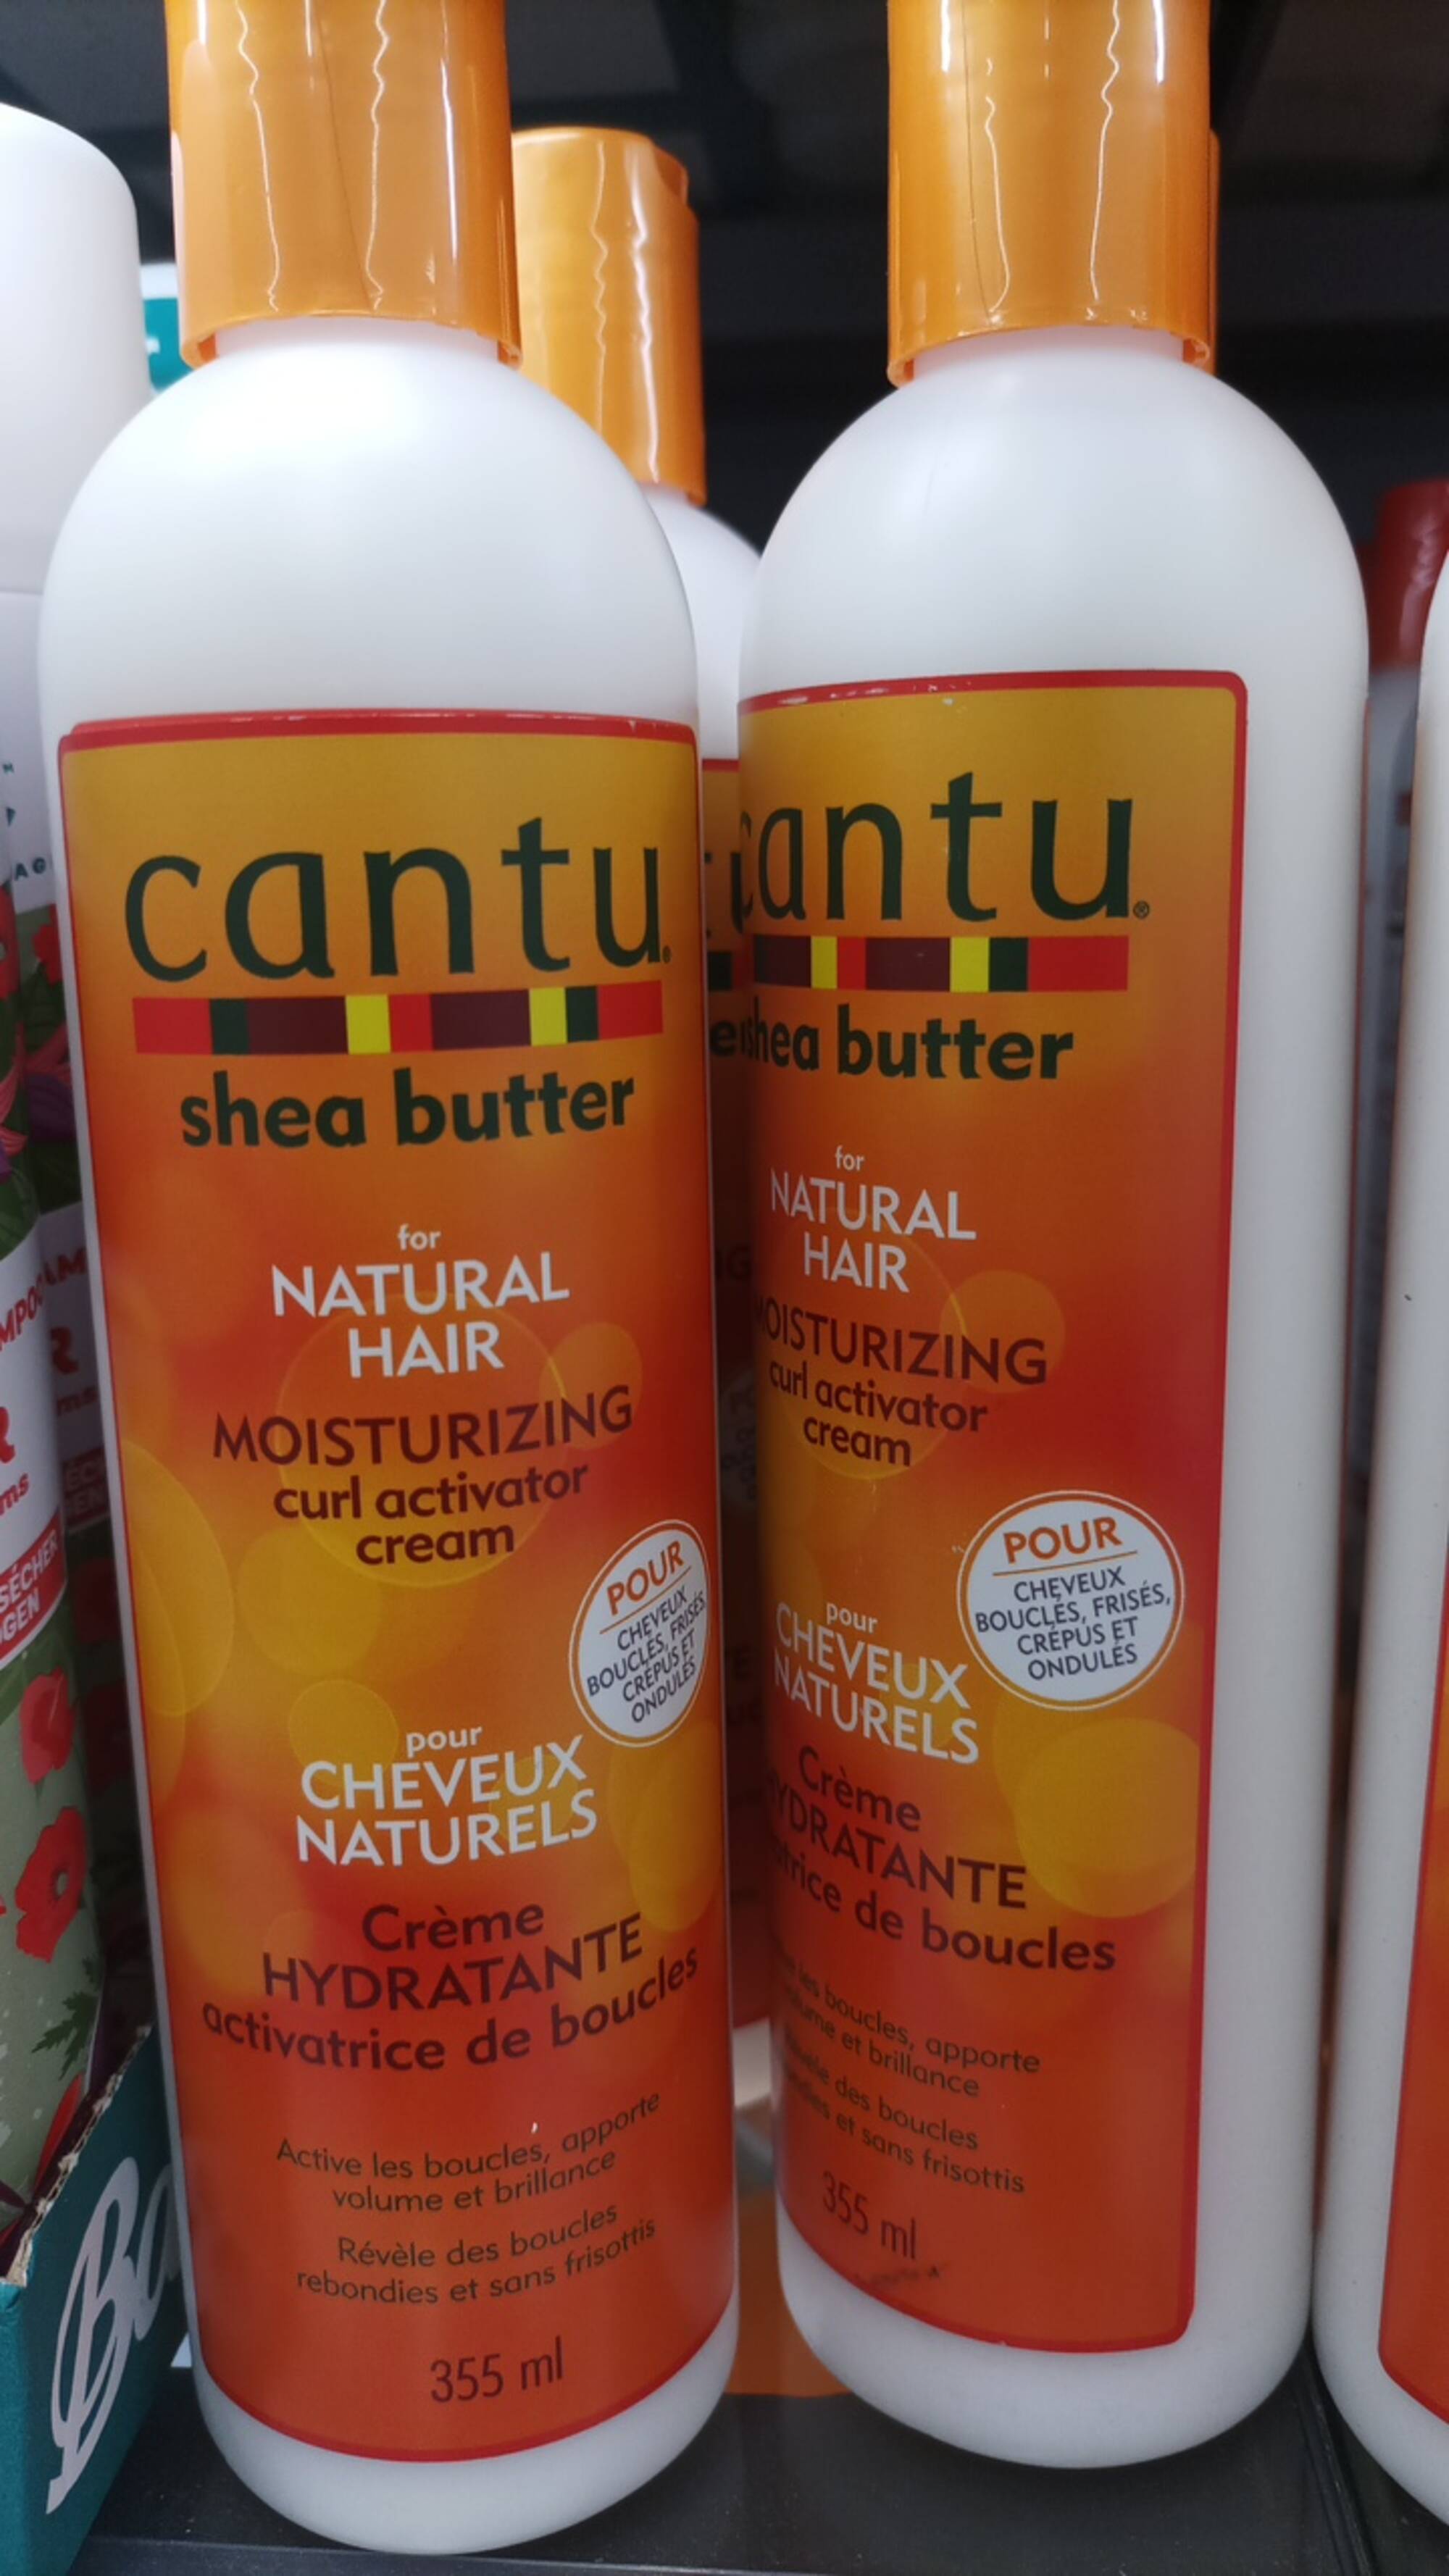 CANTU - Shea butter - Crème hydratante activatrice de boucles